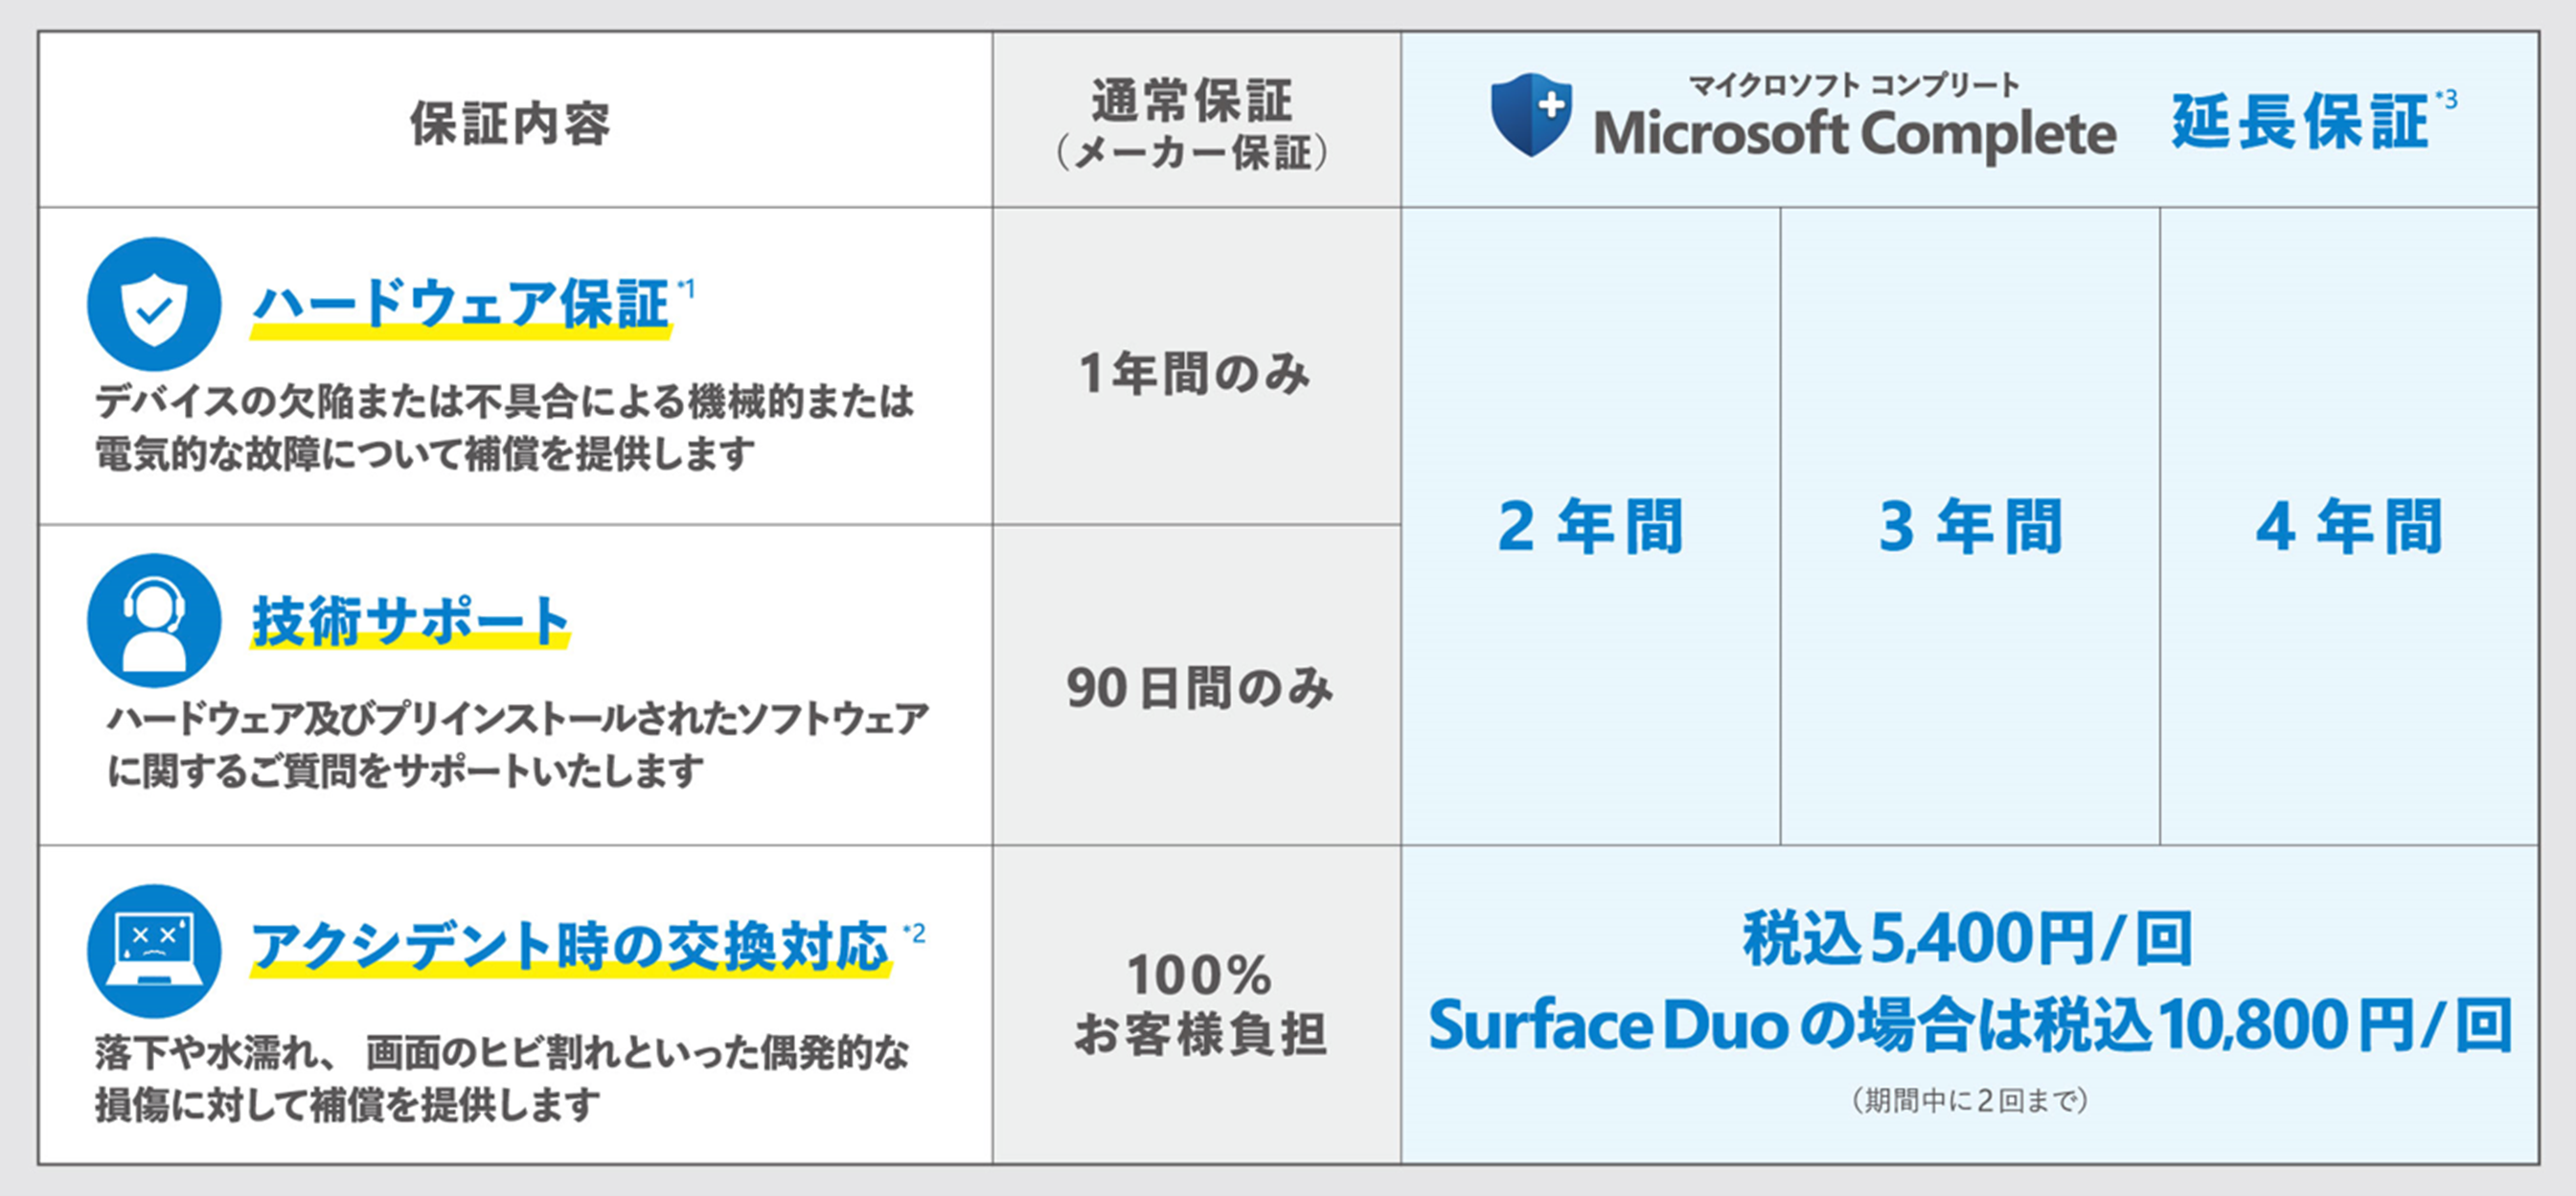 上新電機にて Surface 延長保証サービス「Microsoft Complete」販売